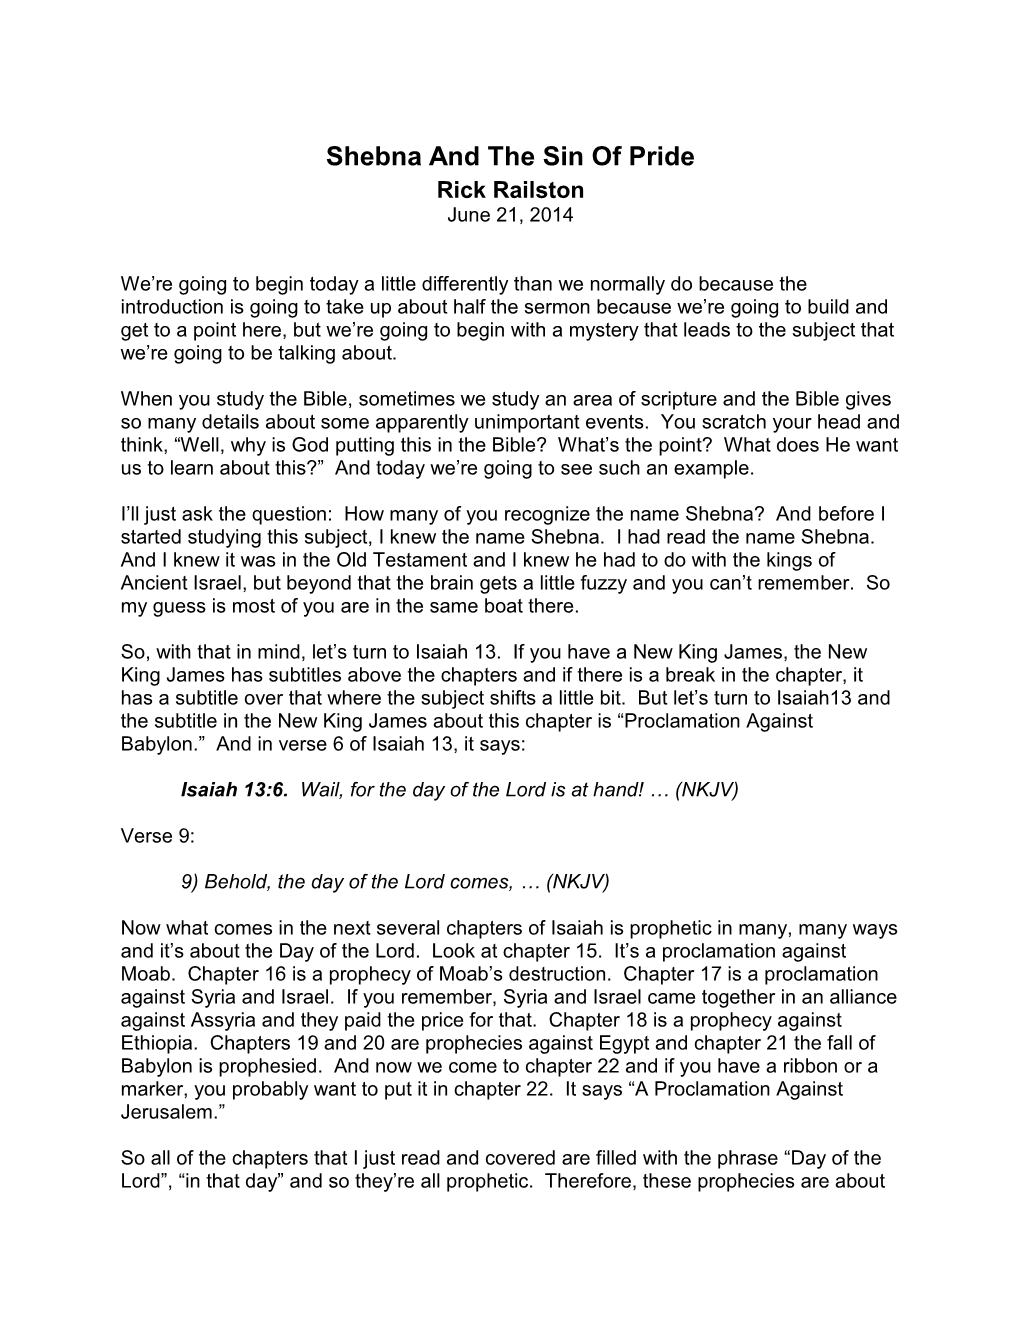 Shebna and the Sin of Pride Rick Railston June 21, 2014